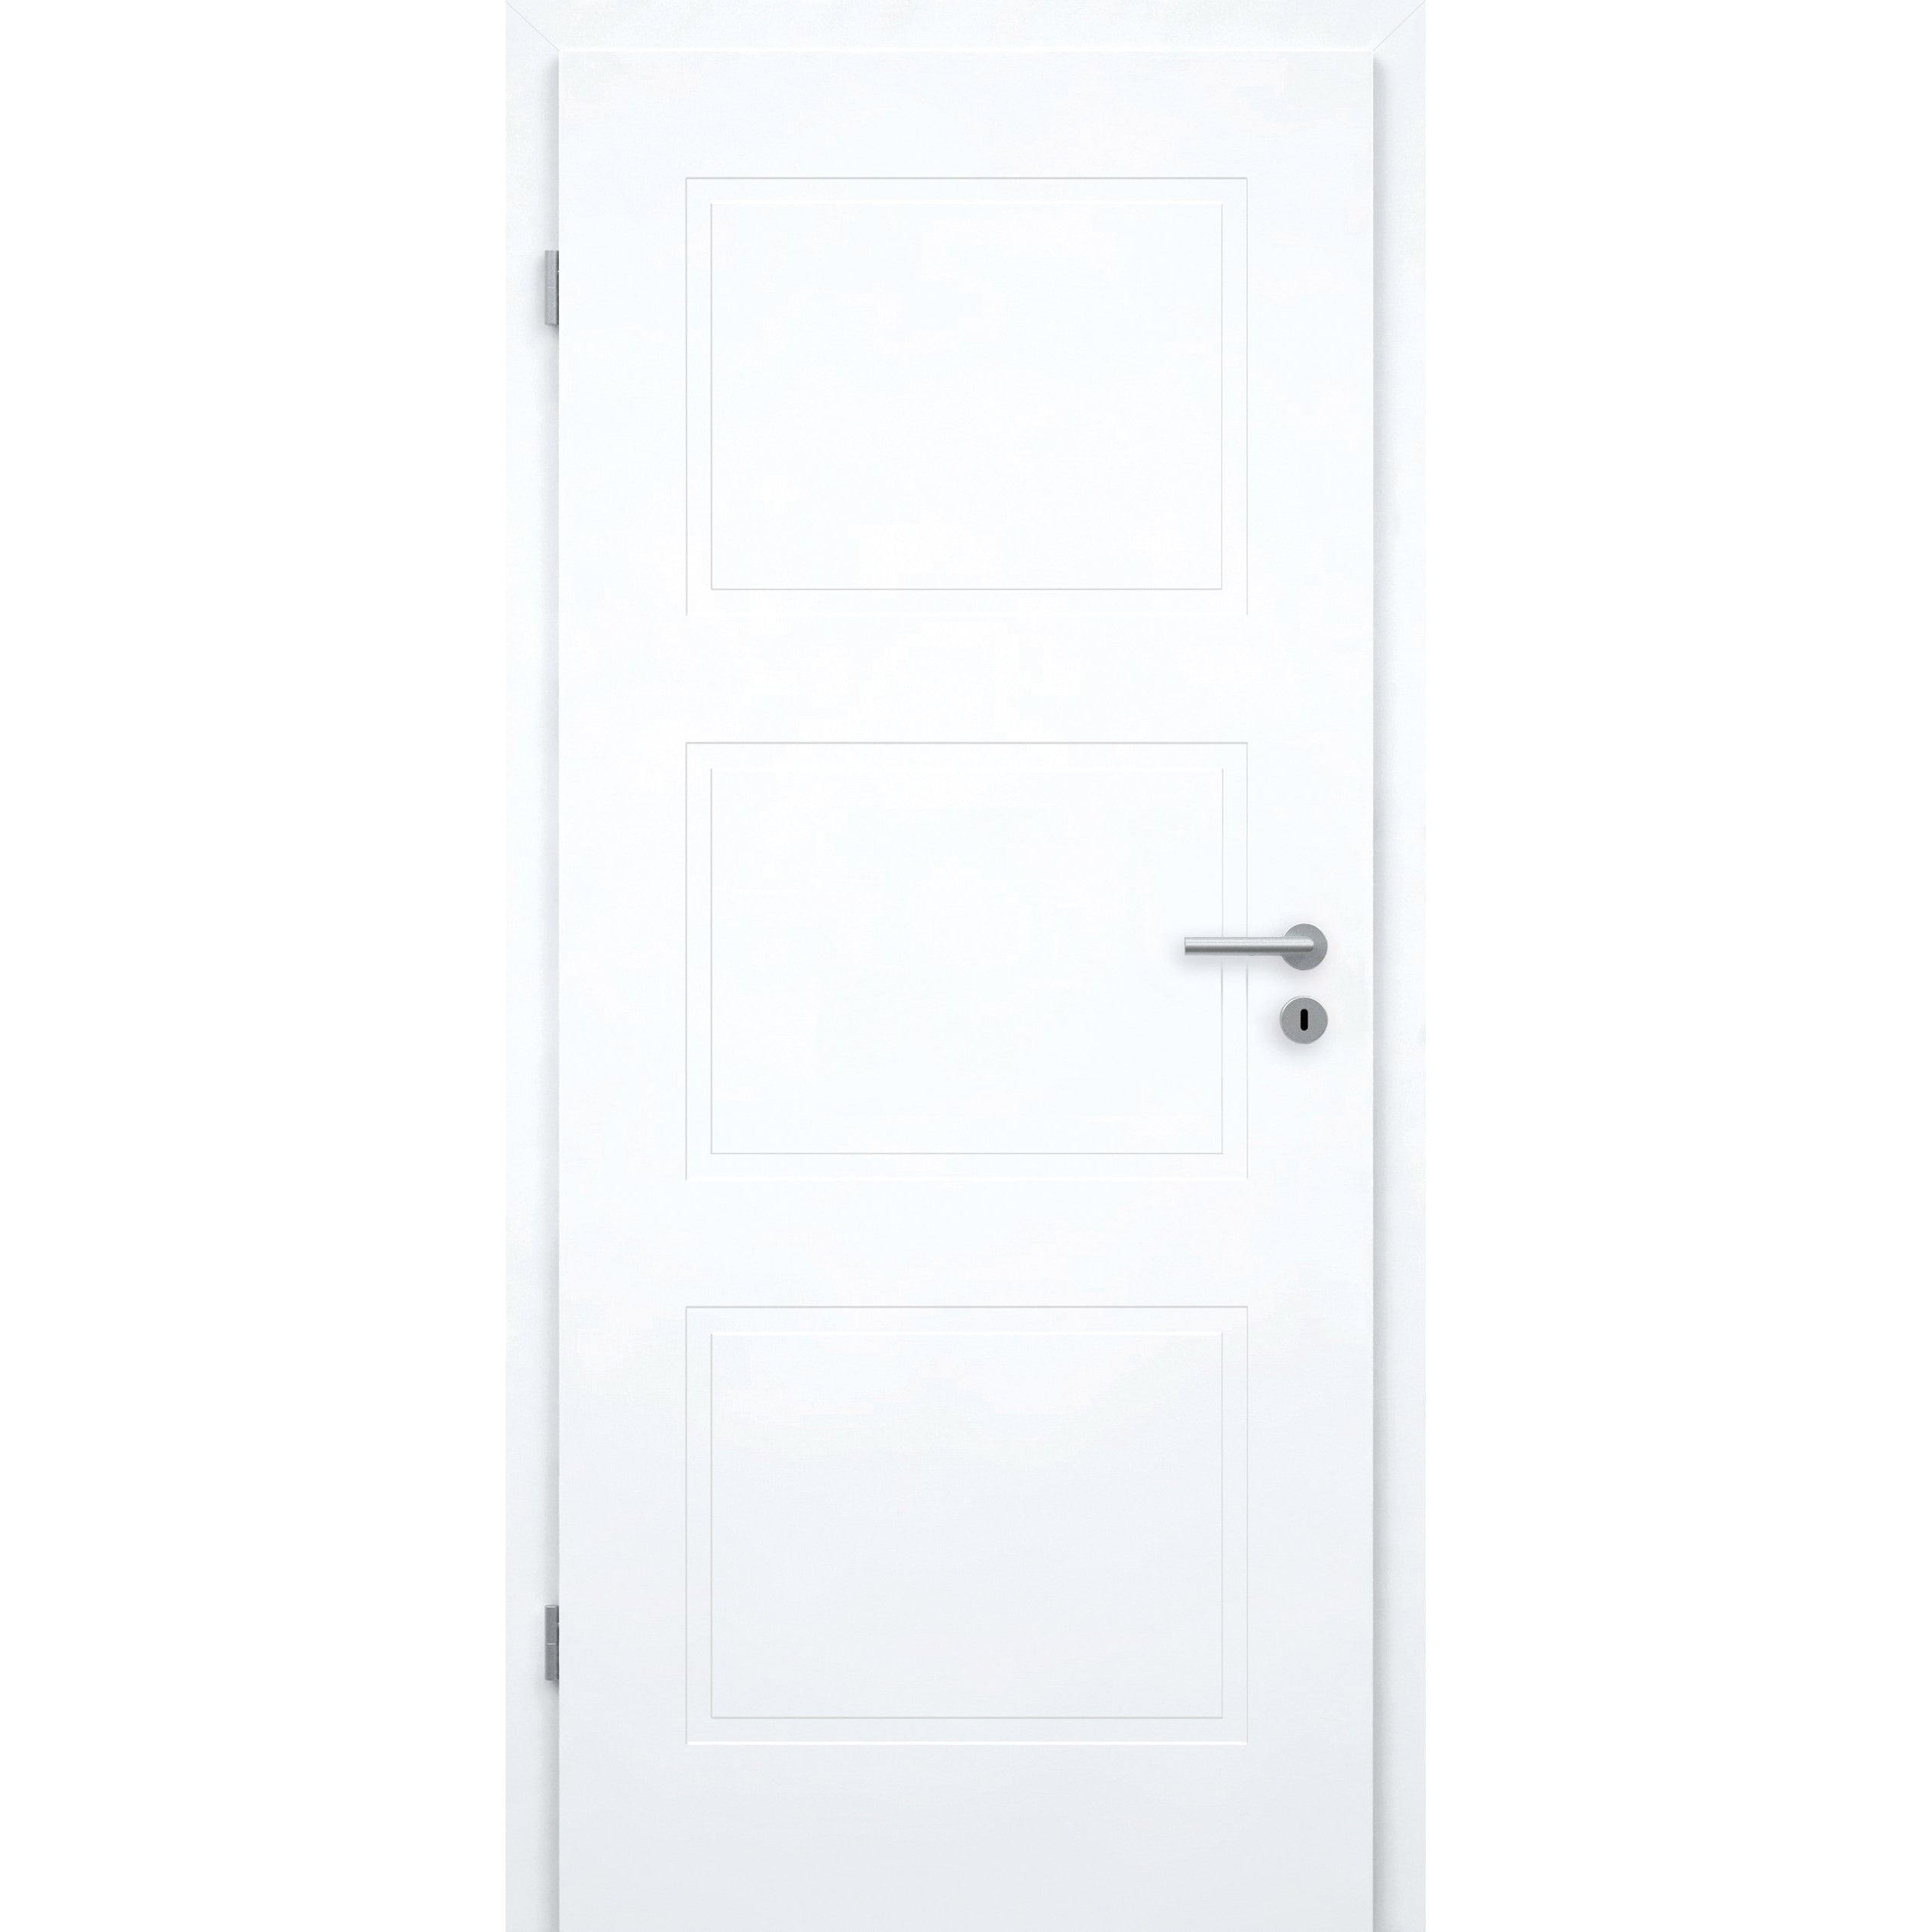 Wohnungseingangstür mit Zarge brillant-weiß 3 Kassetten Designkante SK1 / KK3 - Modell Stiltür M33